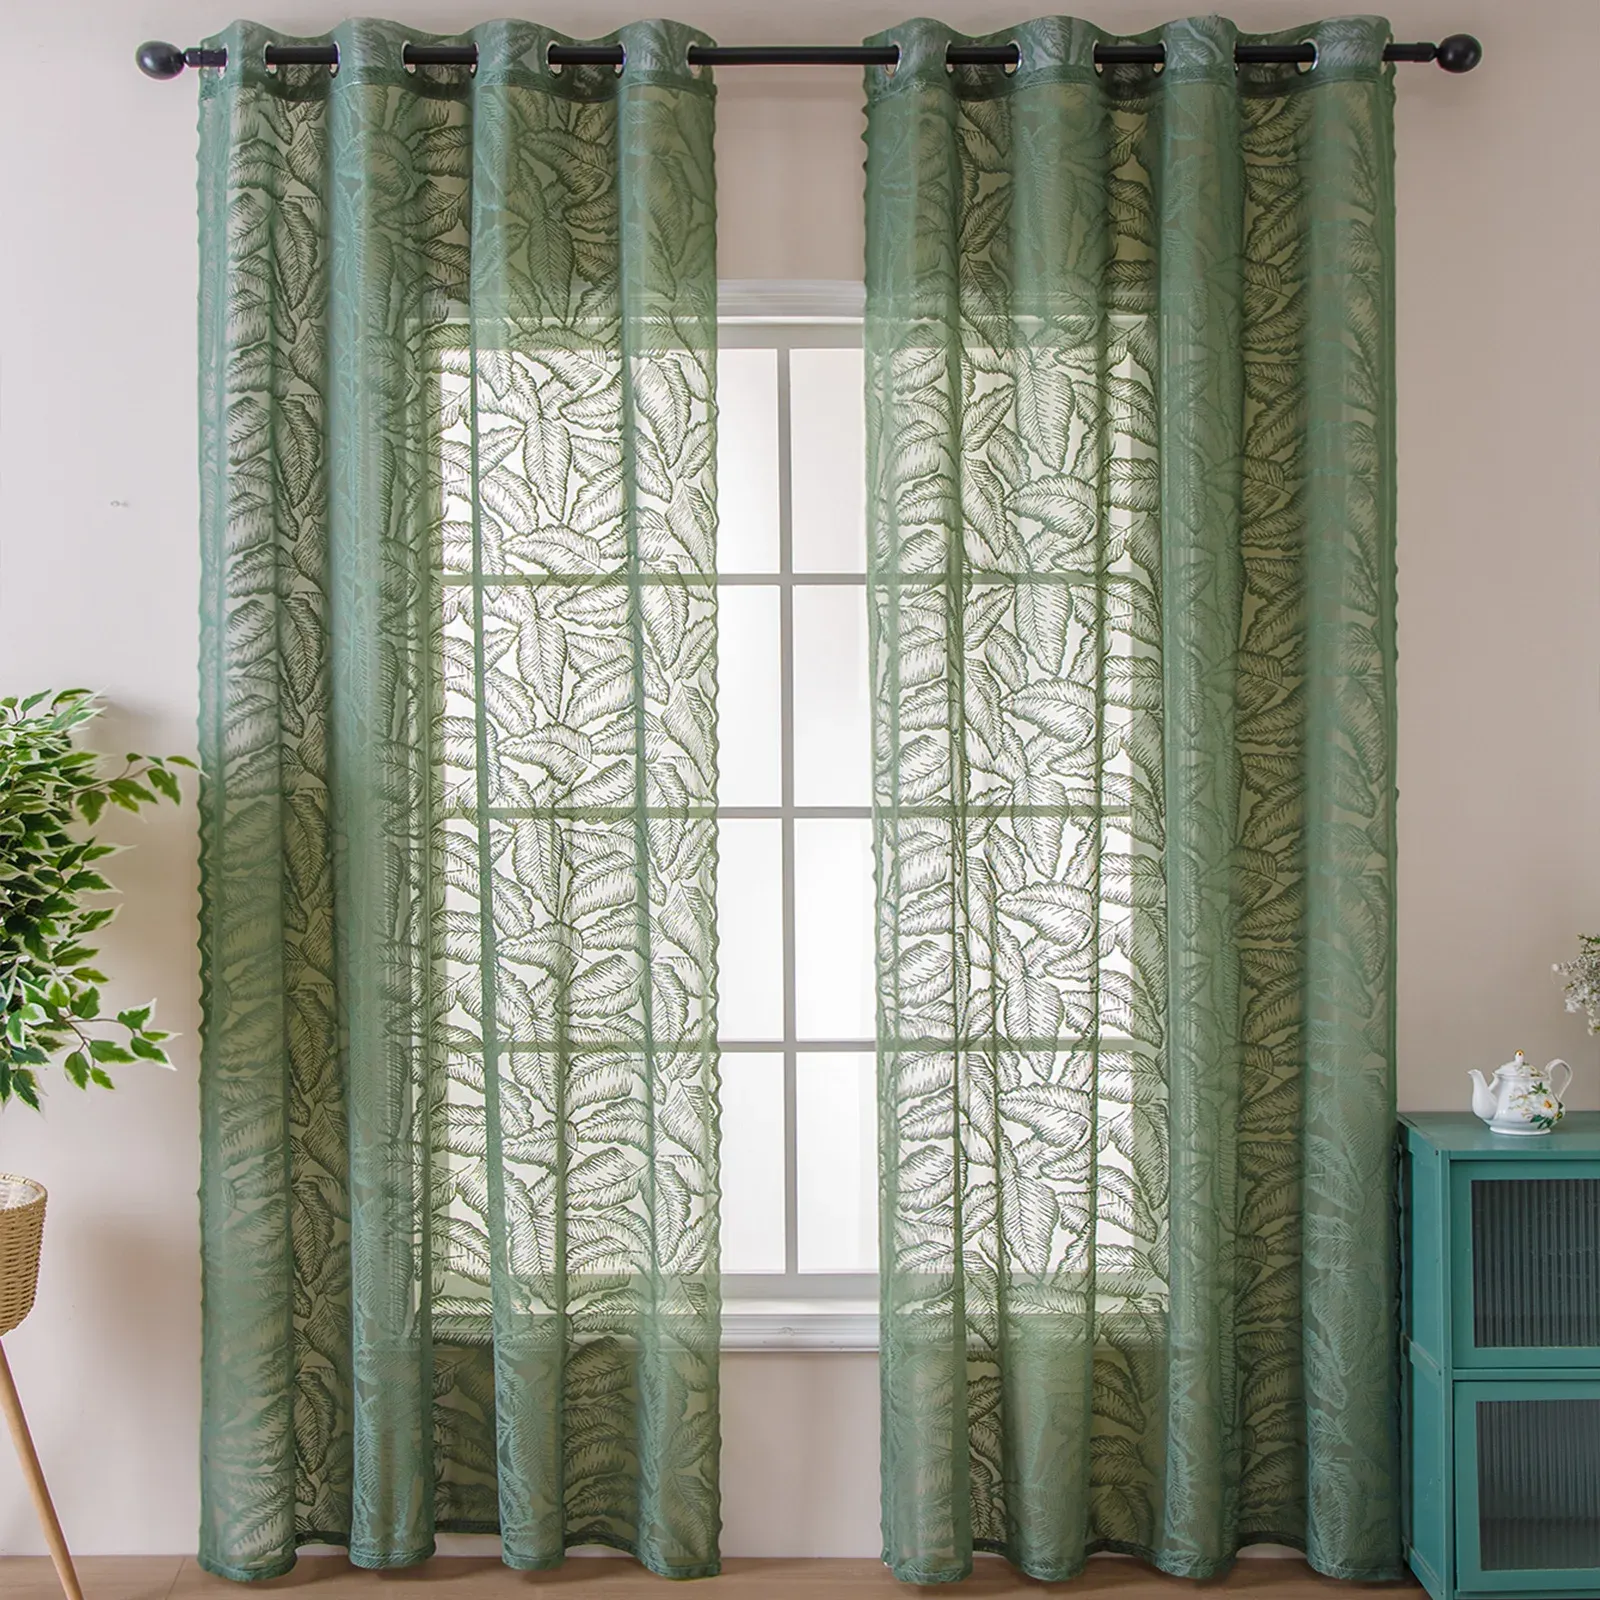 Cortinas verde urdidura cortina de folha de malha para porta da cozinha renda pura voile drape janela tratamento varanda grommet anel # e